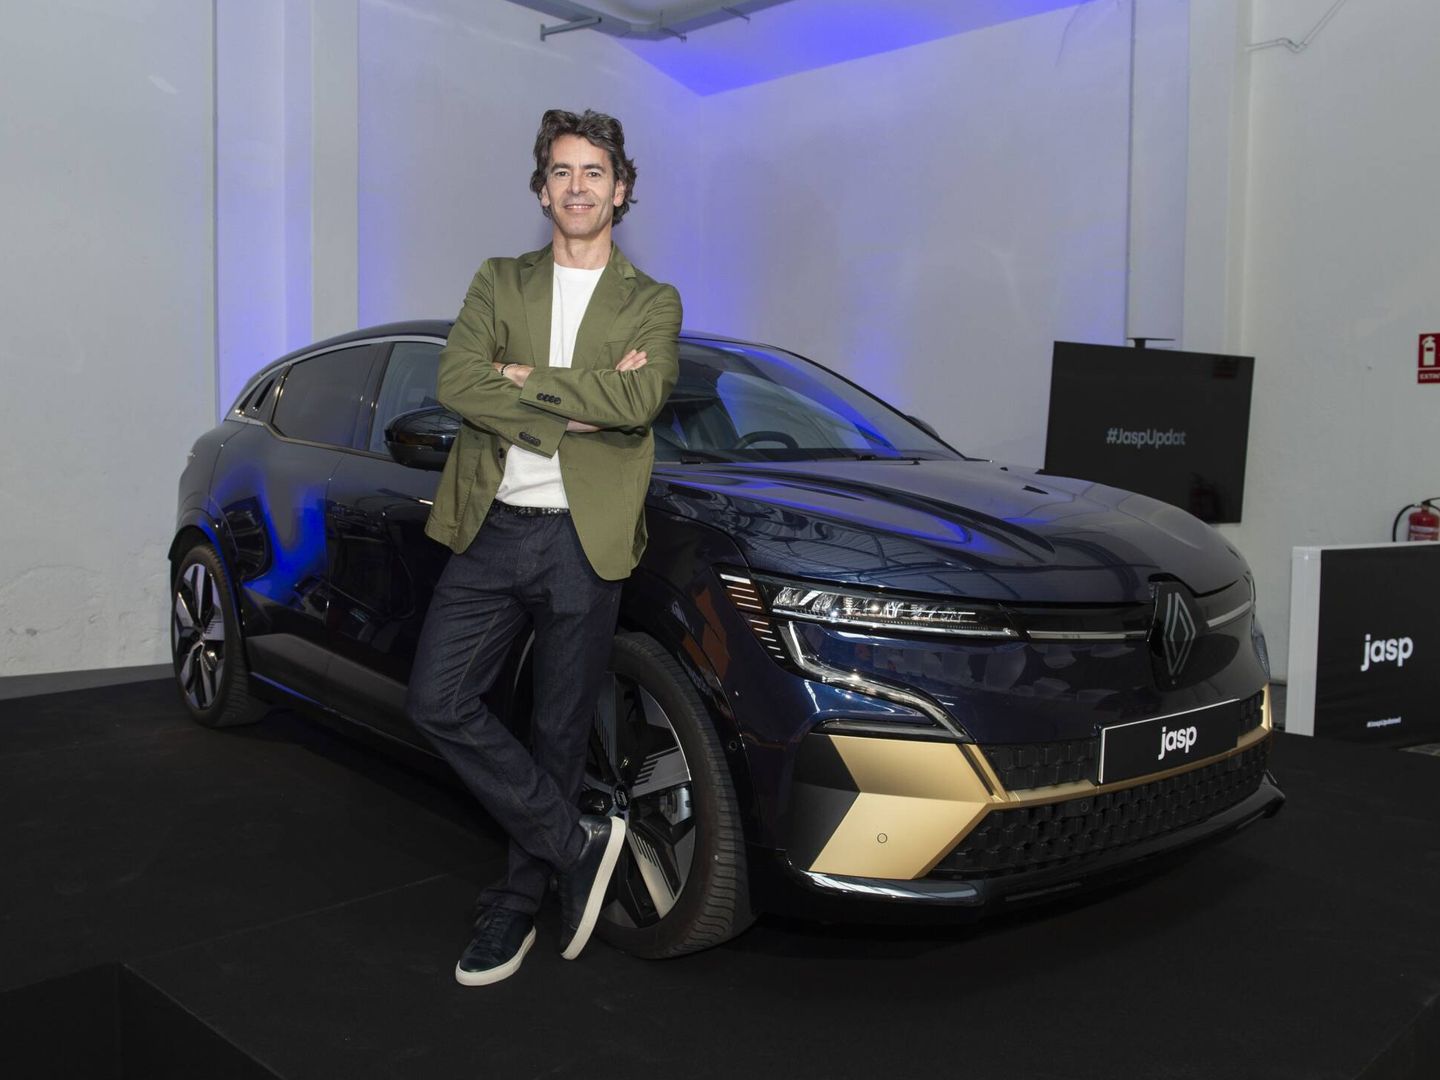 El actor Eduardo Noruega protagoniza la campaña de lanzamiento del Renault Mégane E-Tech eléctrico.